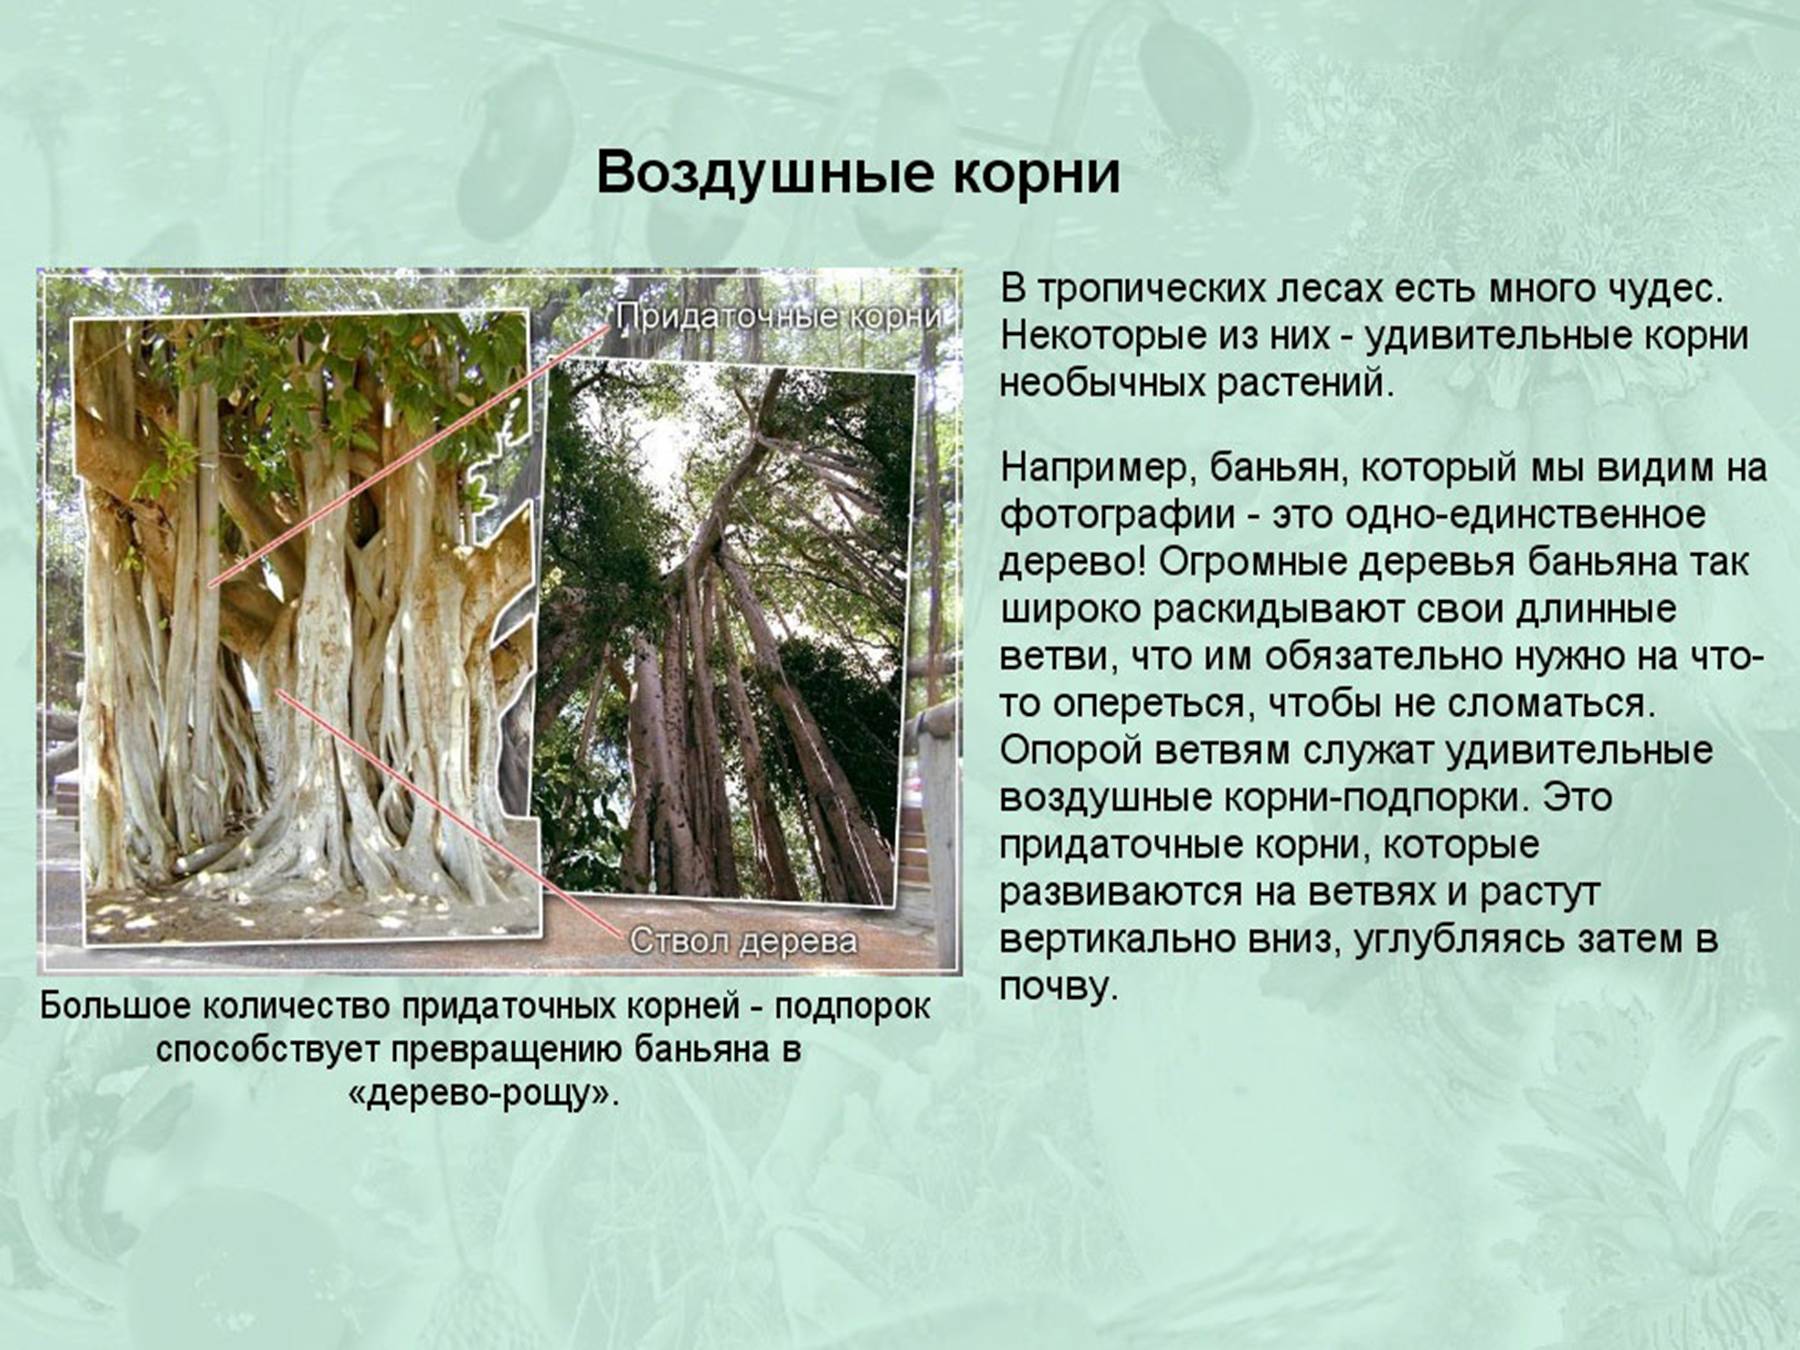 Root message. Сообщение о необычных корнях. Интересные факты о корнях растений. Корень презентация. Необычные воздушные корни.